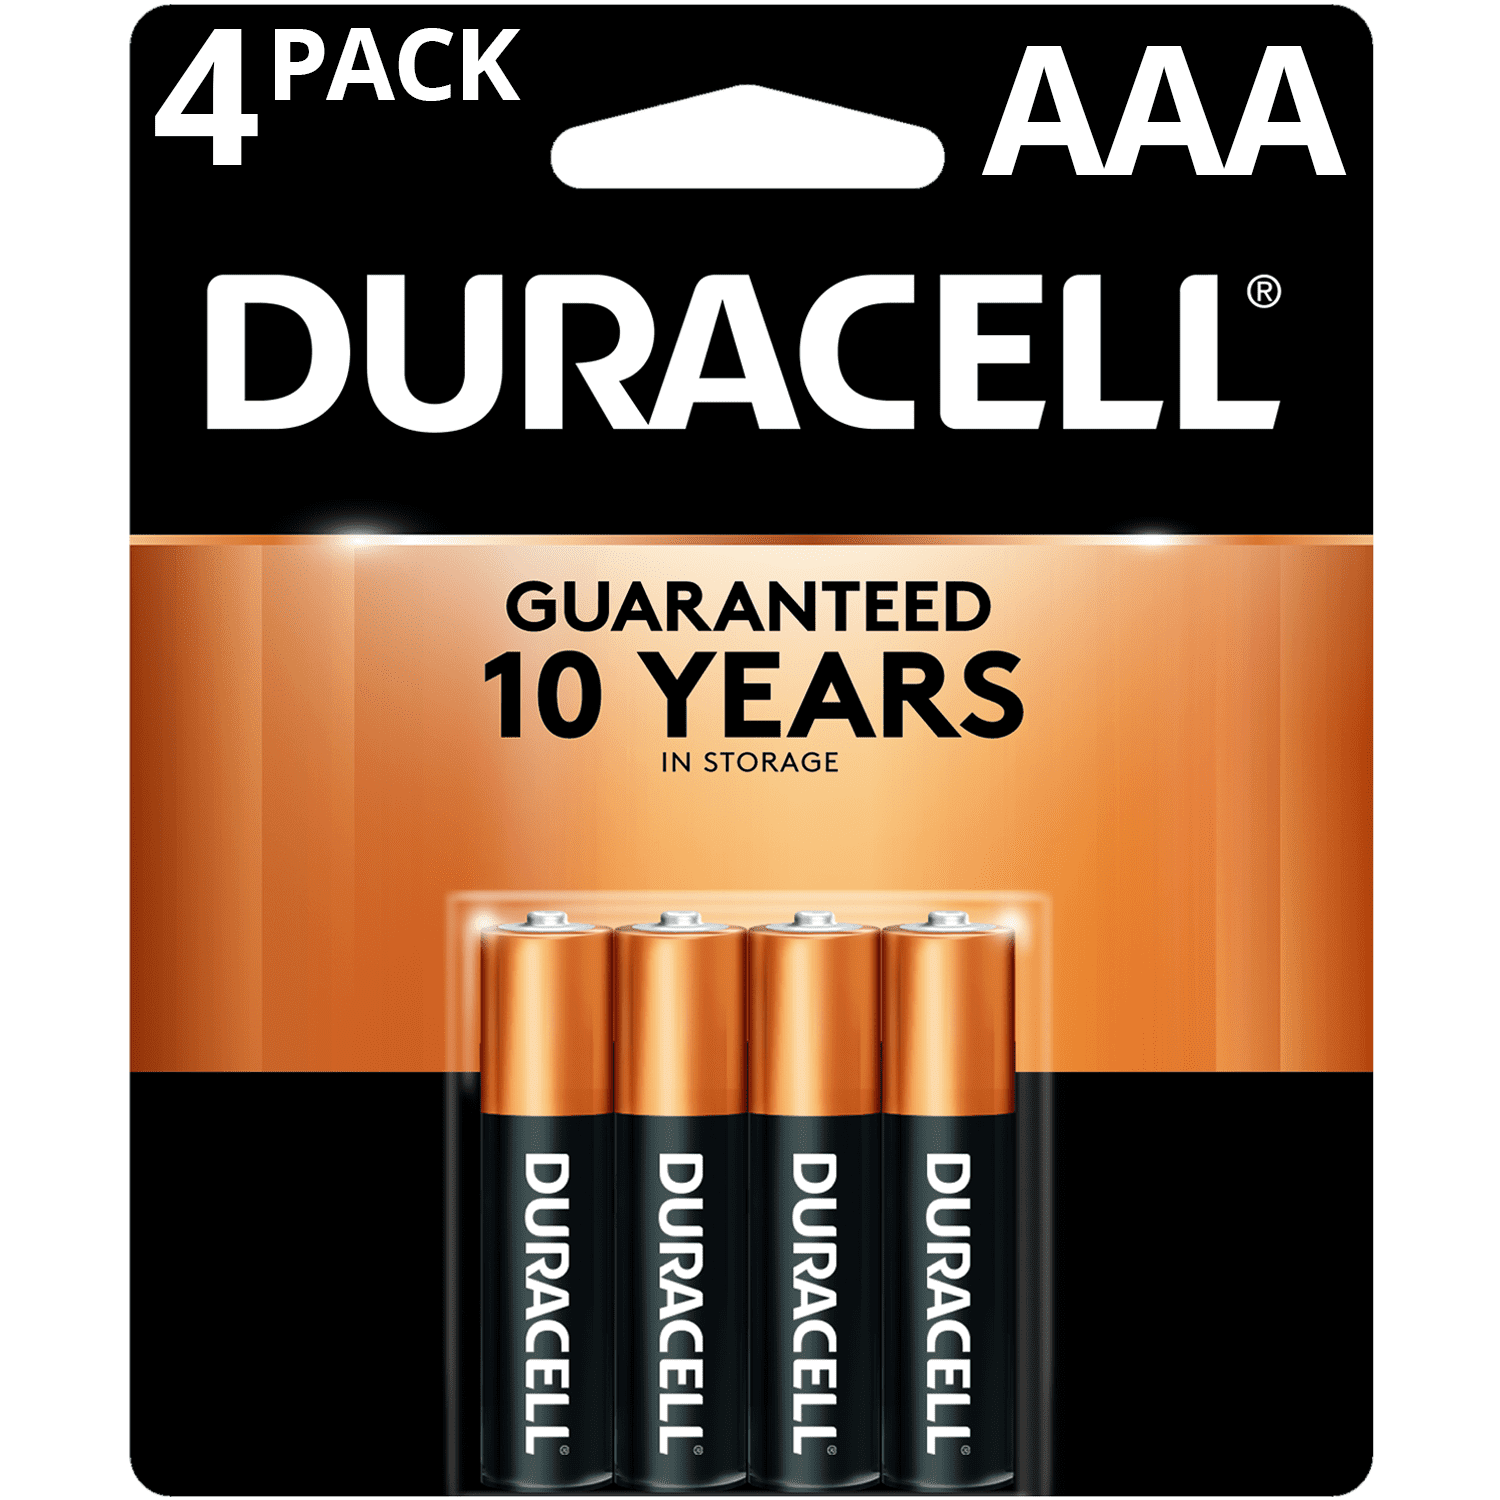 Duracell Duracell Batterien 